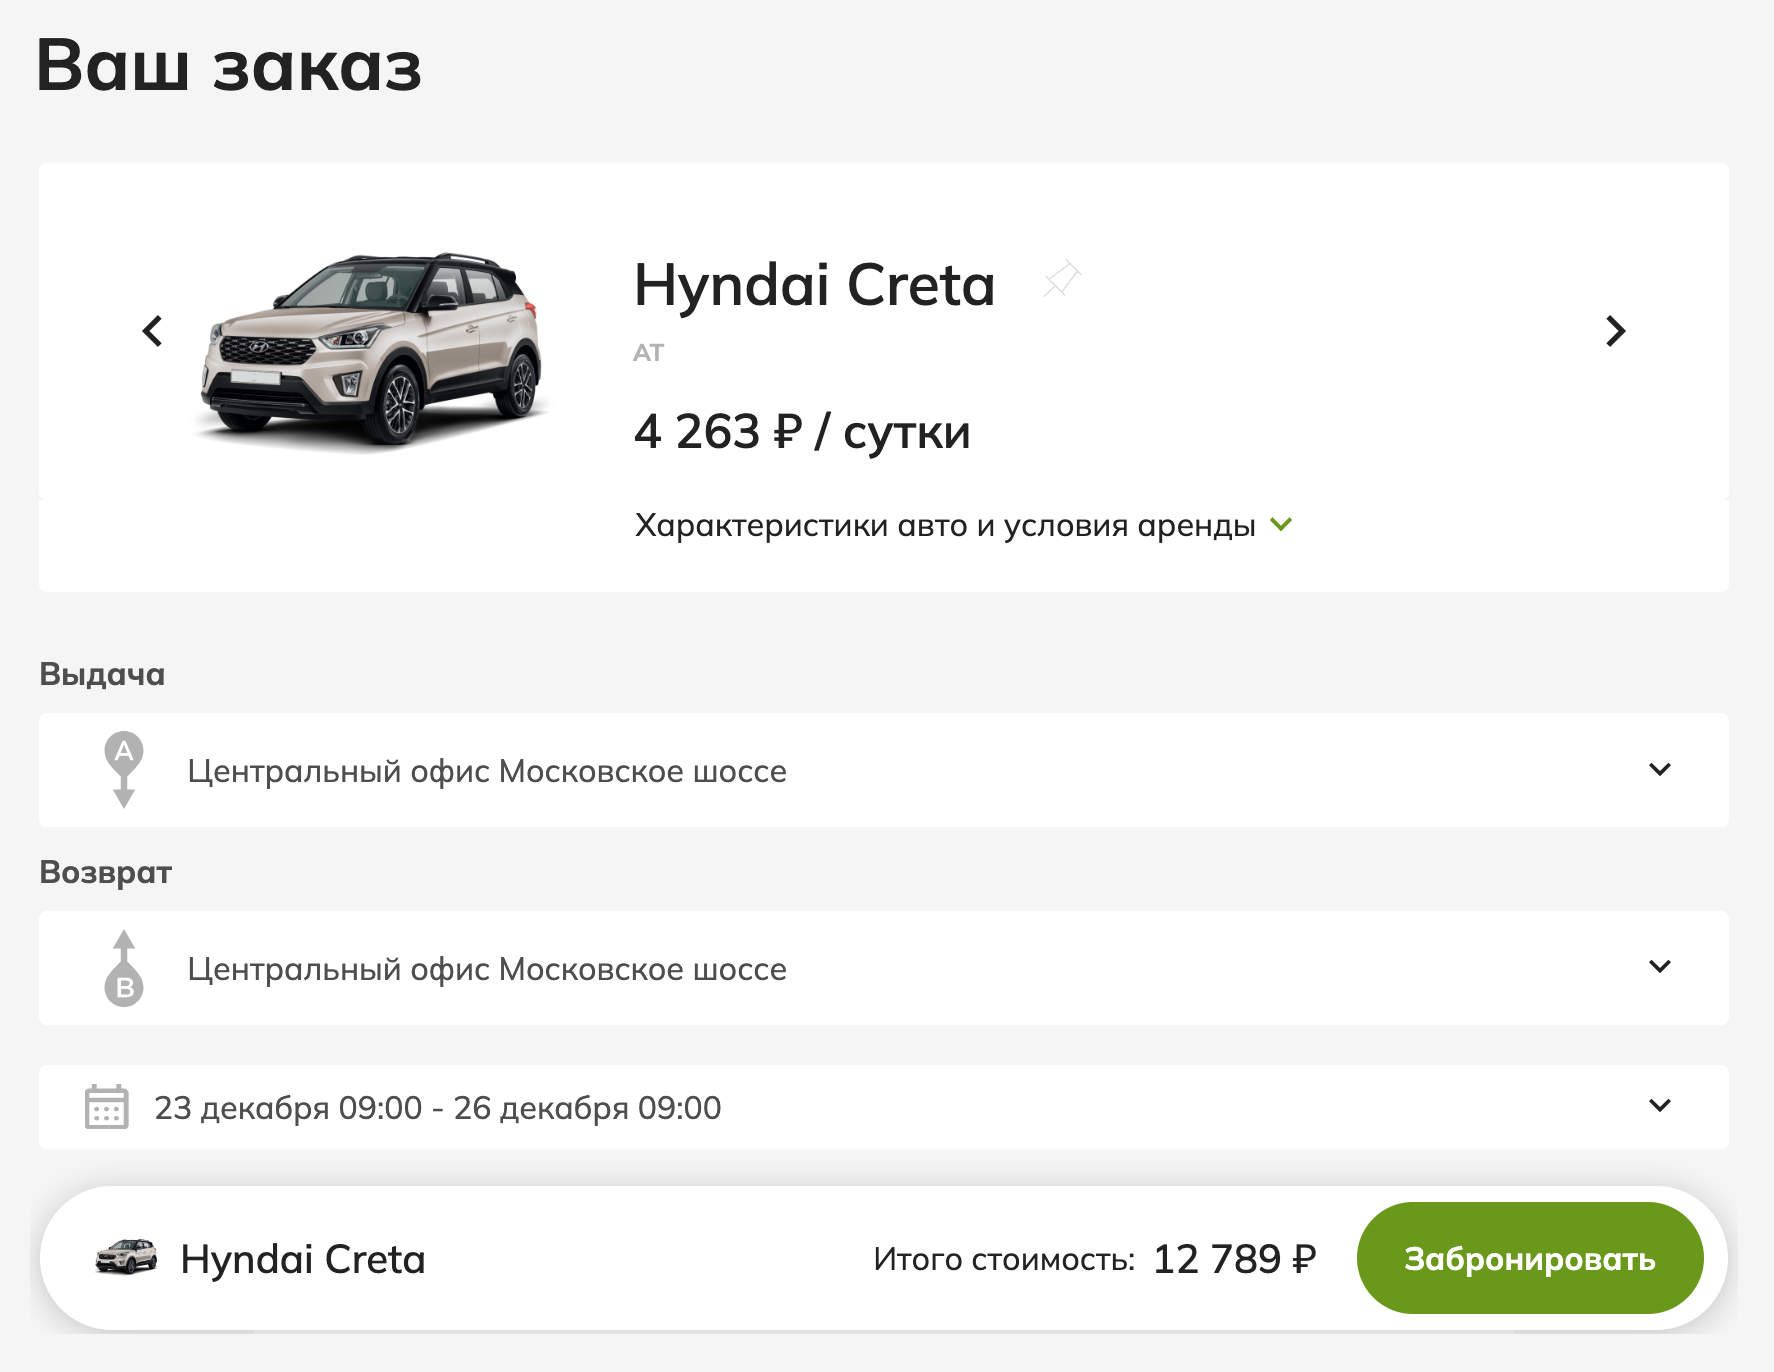 На сайте аренды автомобилей можно забронировать машину онлайн. Источник: spb.inspirerent.ru